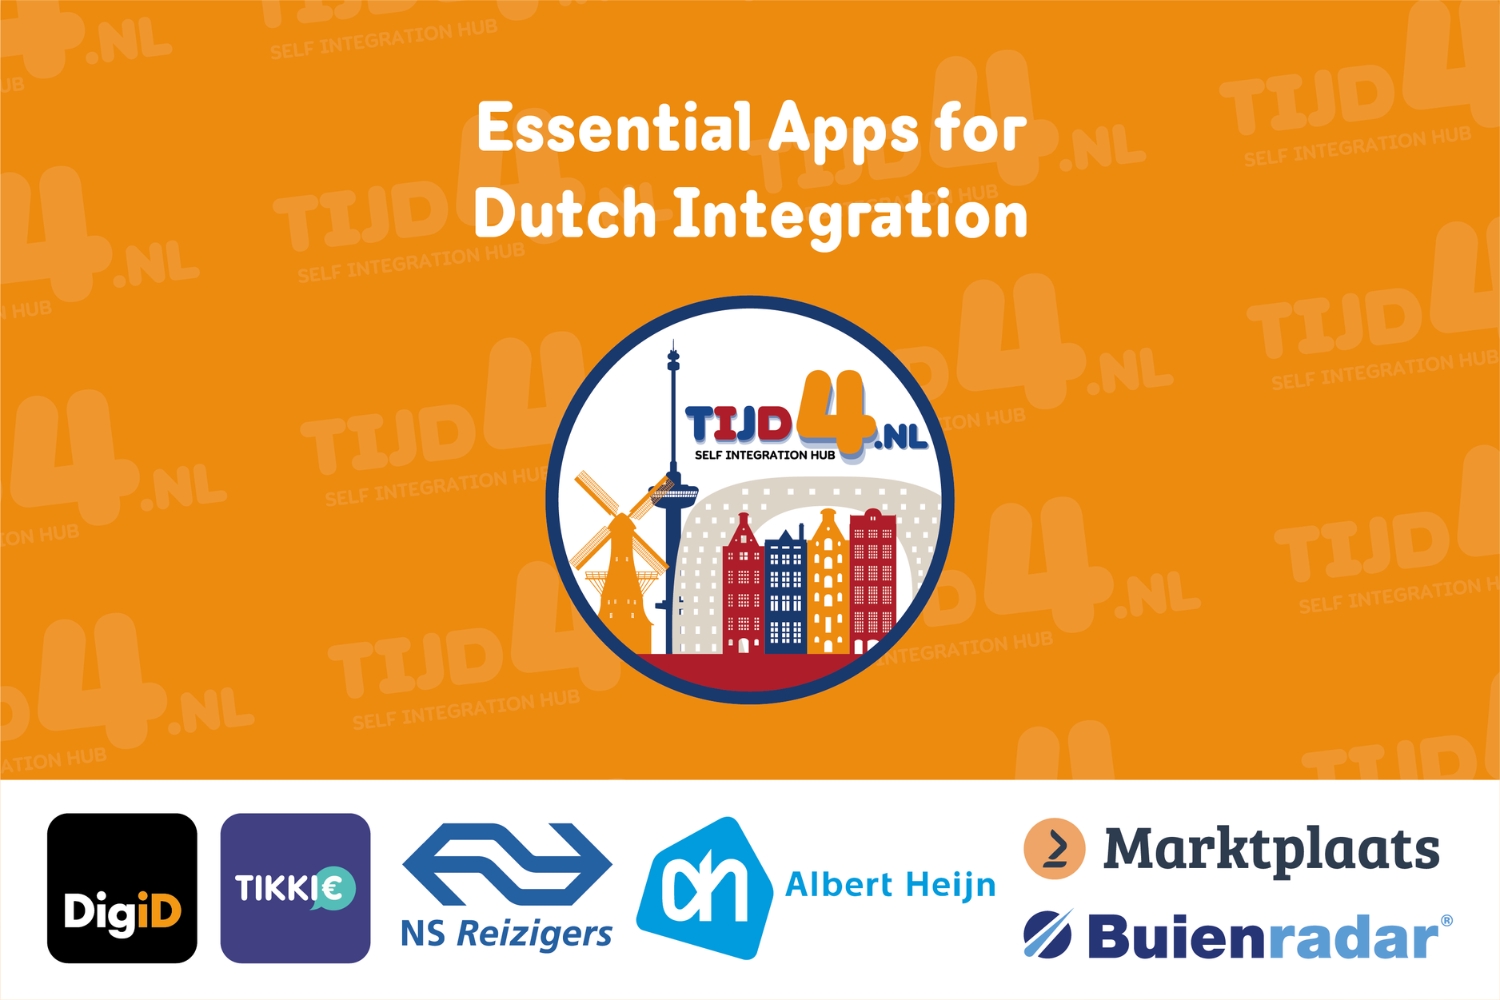 Coverfoto van TIJD4's blogpost "Essentiële Apps voor Nederlandse Inburgering" met de logo's van DigiD, Tikkie, NS Reziger, Albert Heijn, Marktplaats en Buienradar.